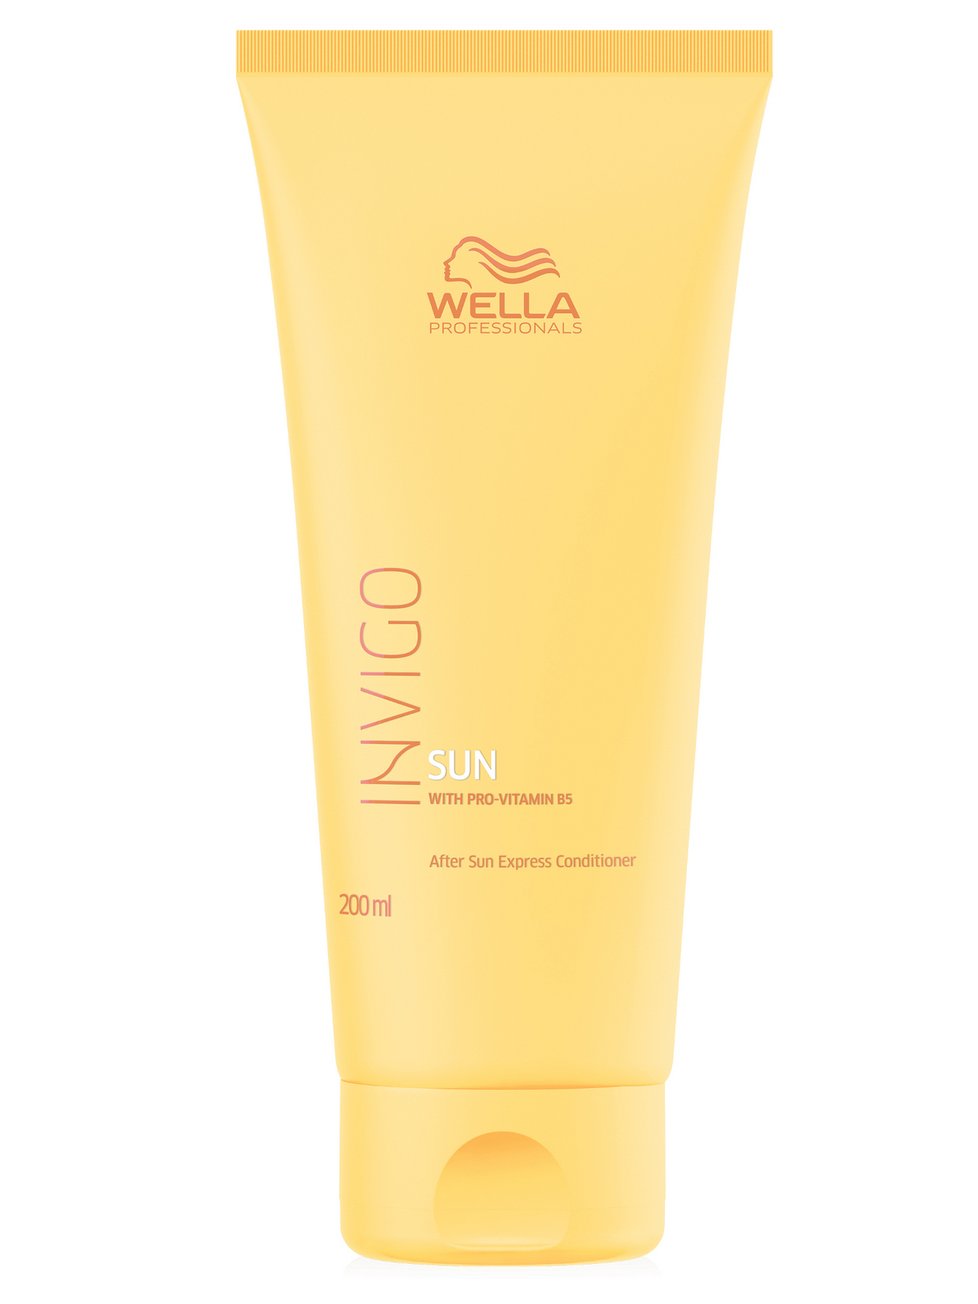 Péče pro ochranu vlasů před sluncem Wella Sun Invigo, 231 Kč (200 ml), koupíte na www.svetkadernictvi